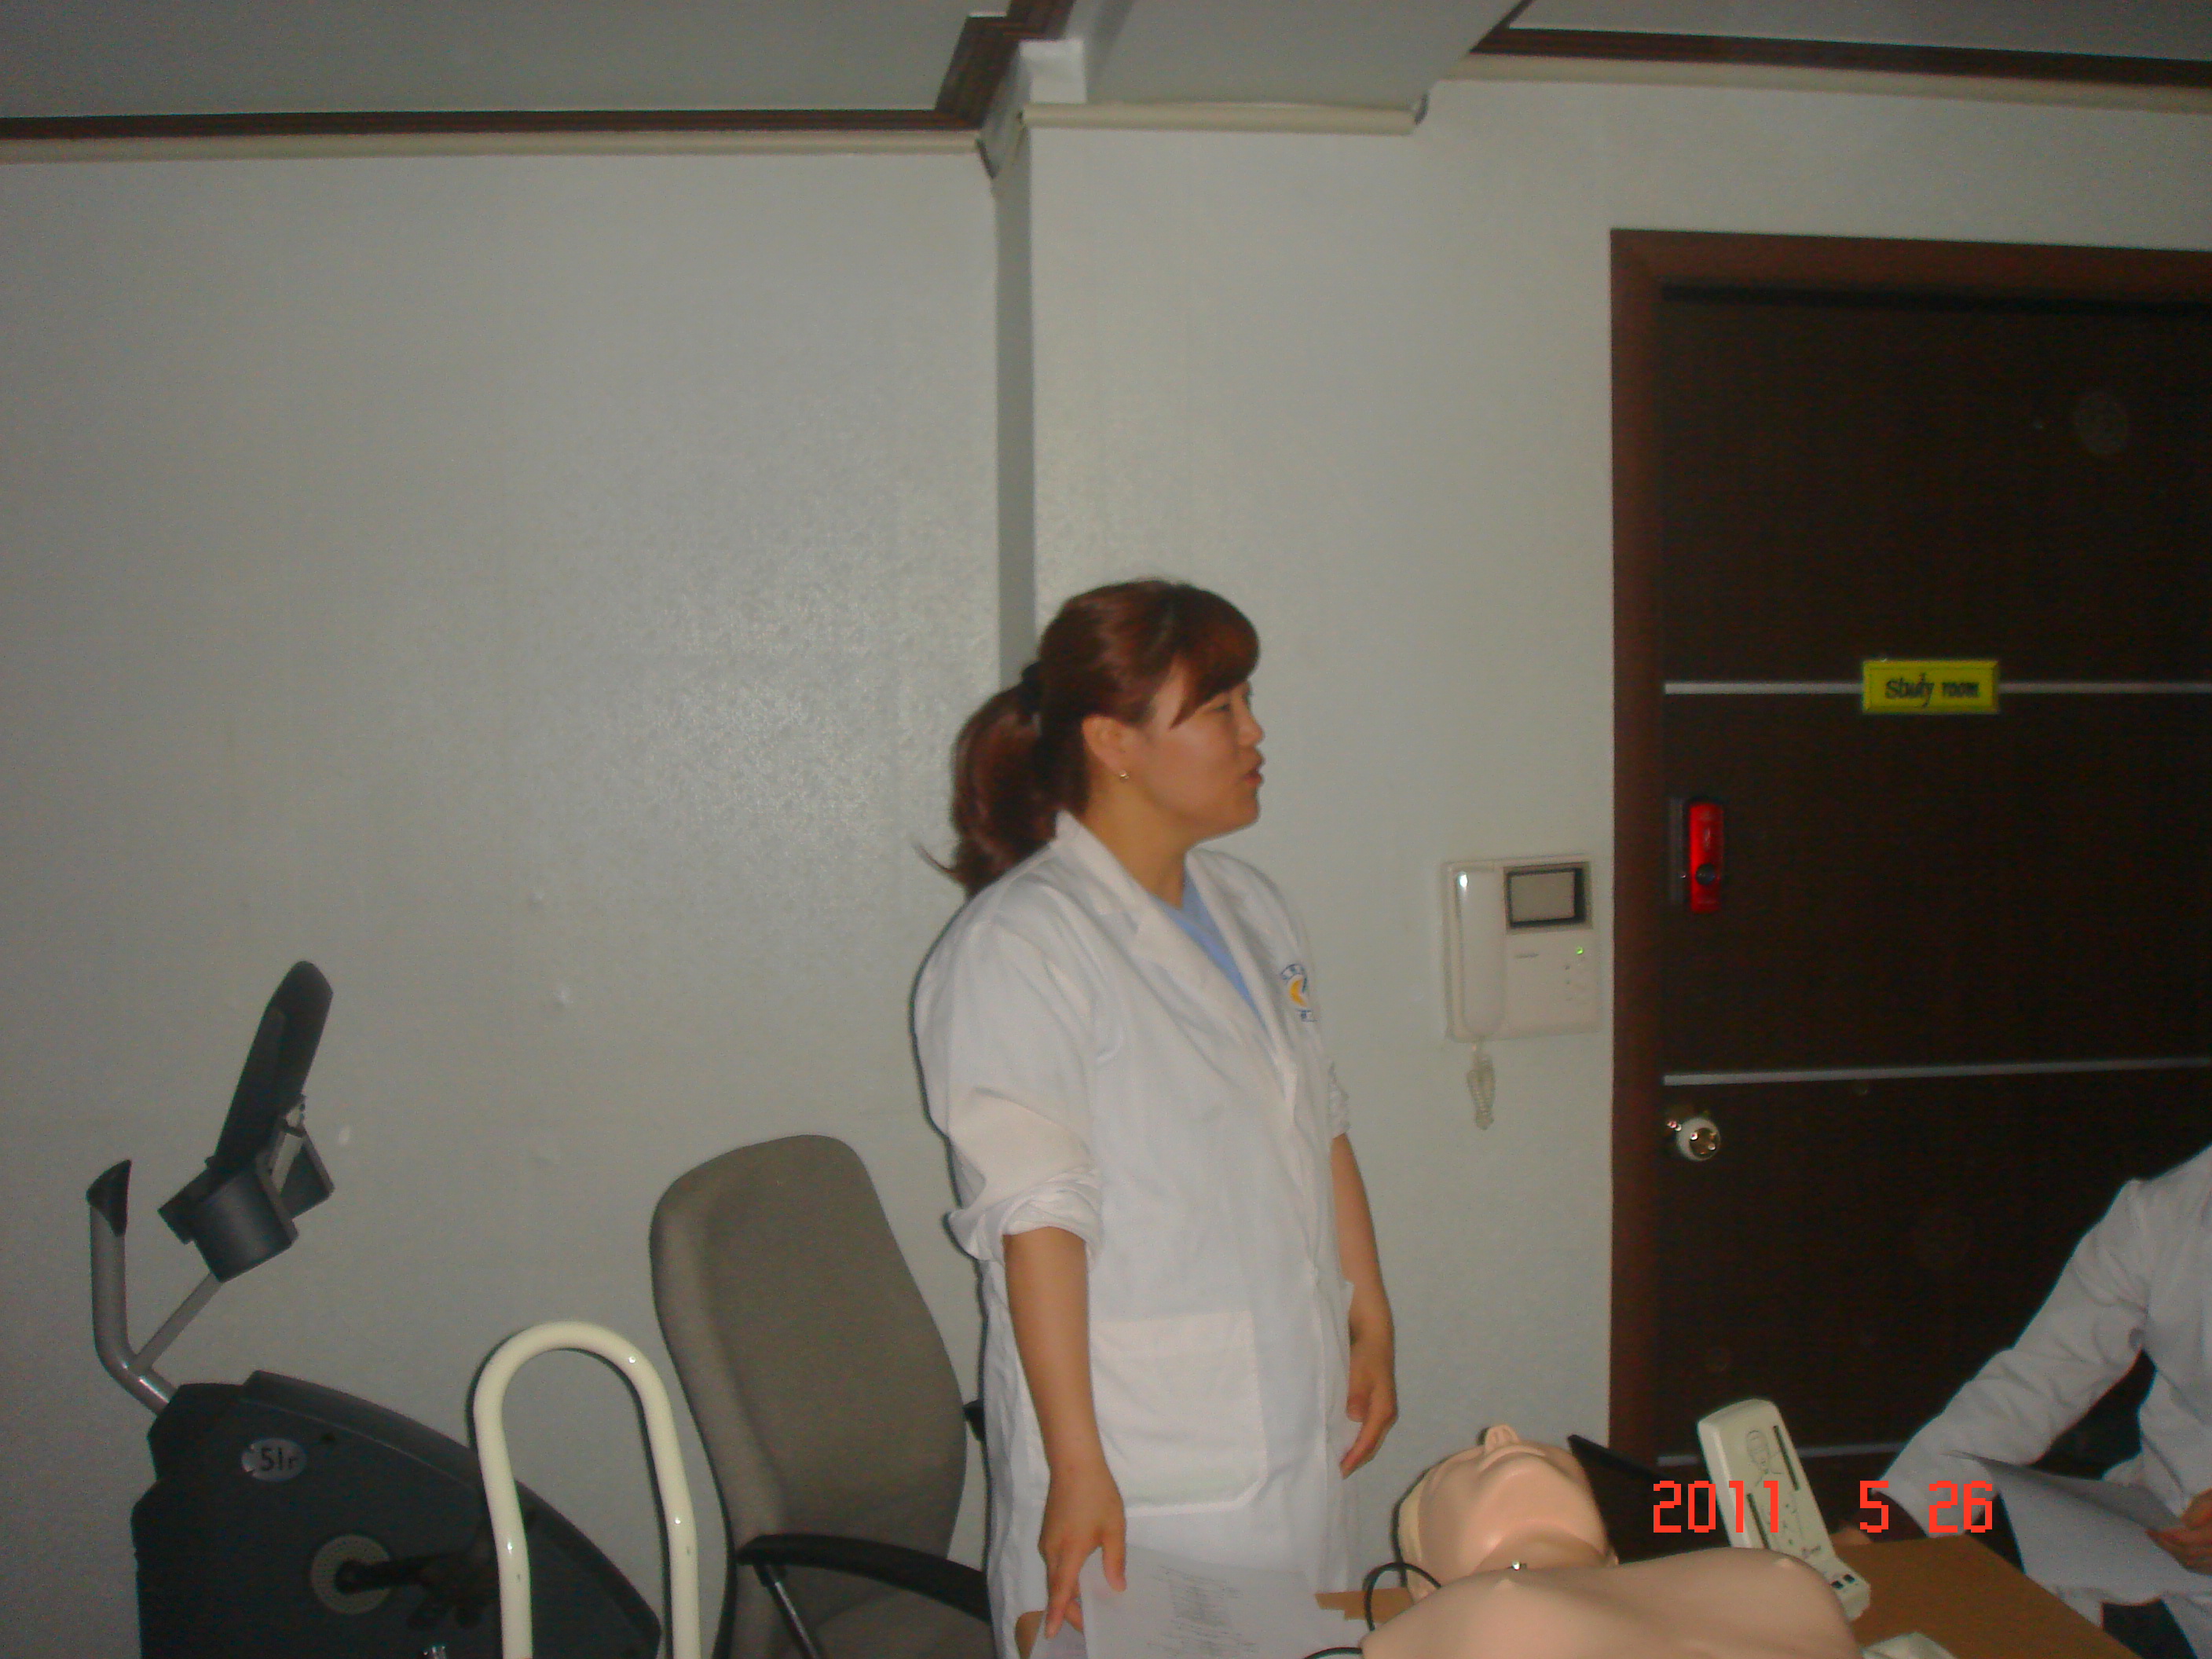 [강북점] 2011년 5월 26일 - 전직원 직무교육 실시 (심폐소생술, CPR) 게시글의 1번째 첨부파일입니다.